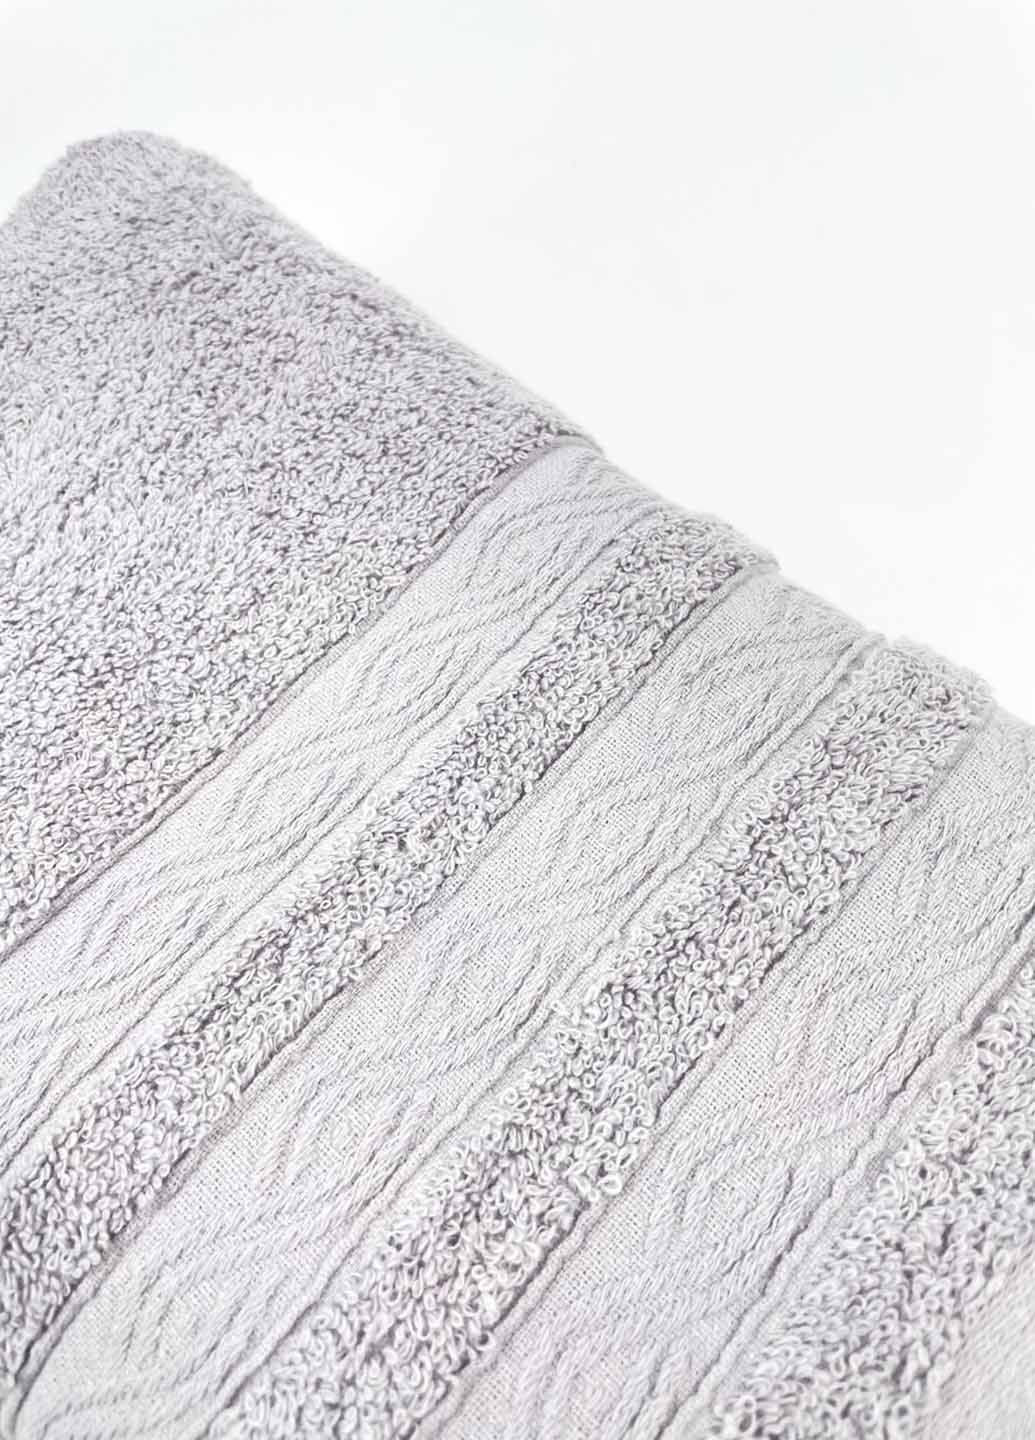 Homedec полотенце лицевое махровое 100х50 см абстрактный светло-серый производство - Турция